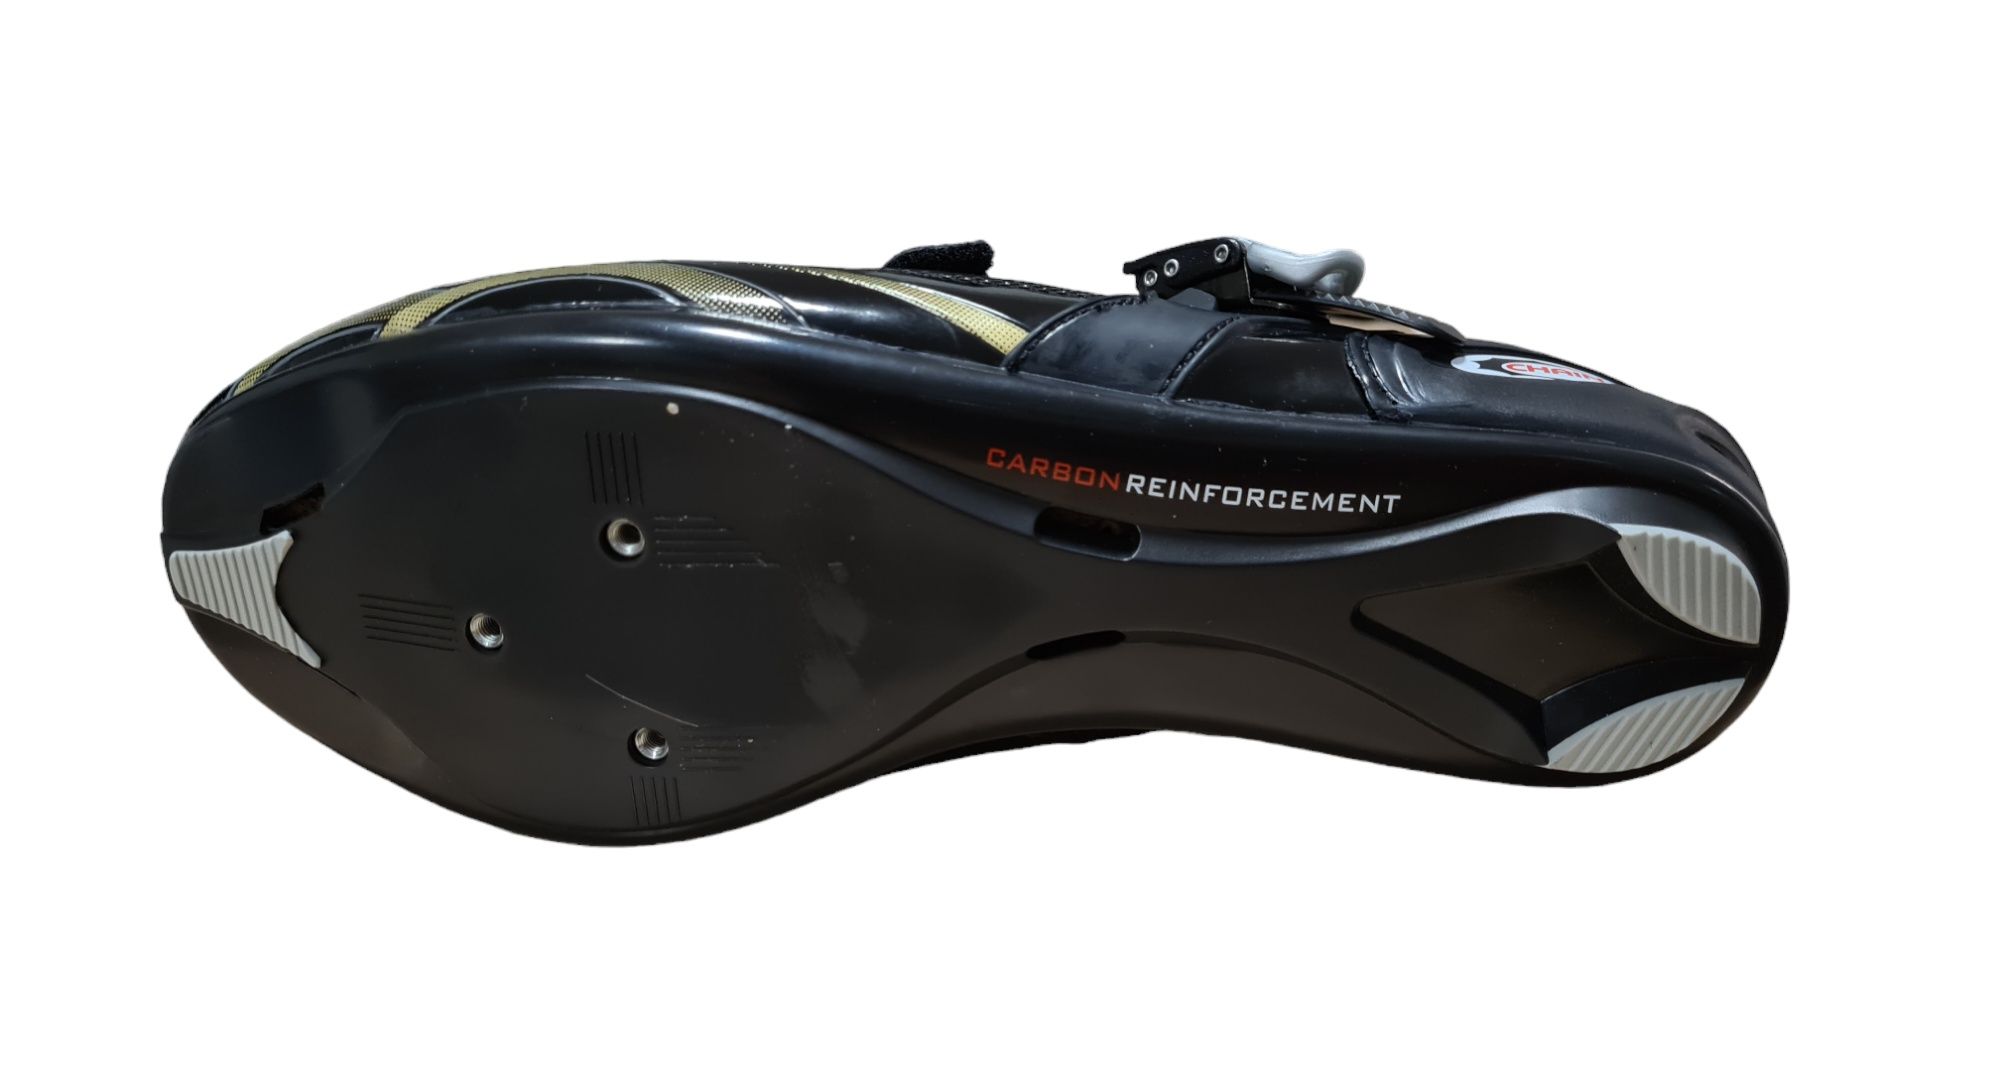 Nowe buty rowerowe karbonowe CHAIN NOVA 2 rozm 44 i r. 46